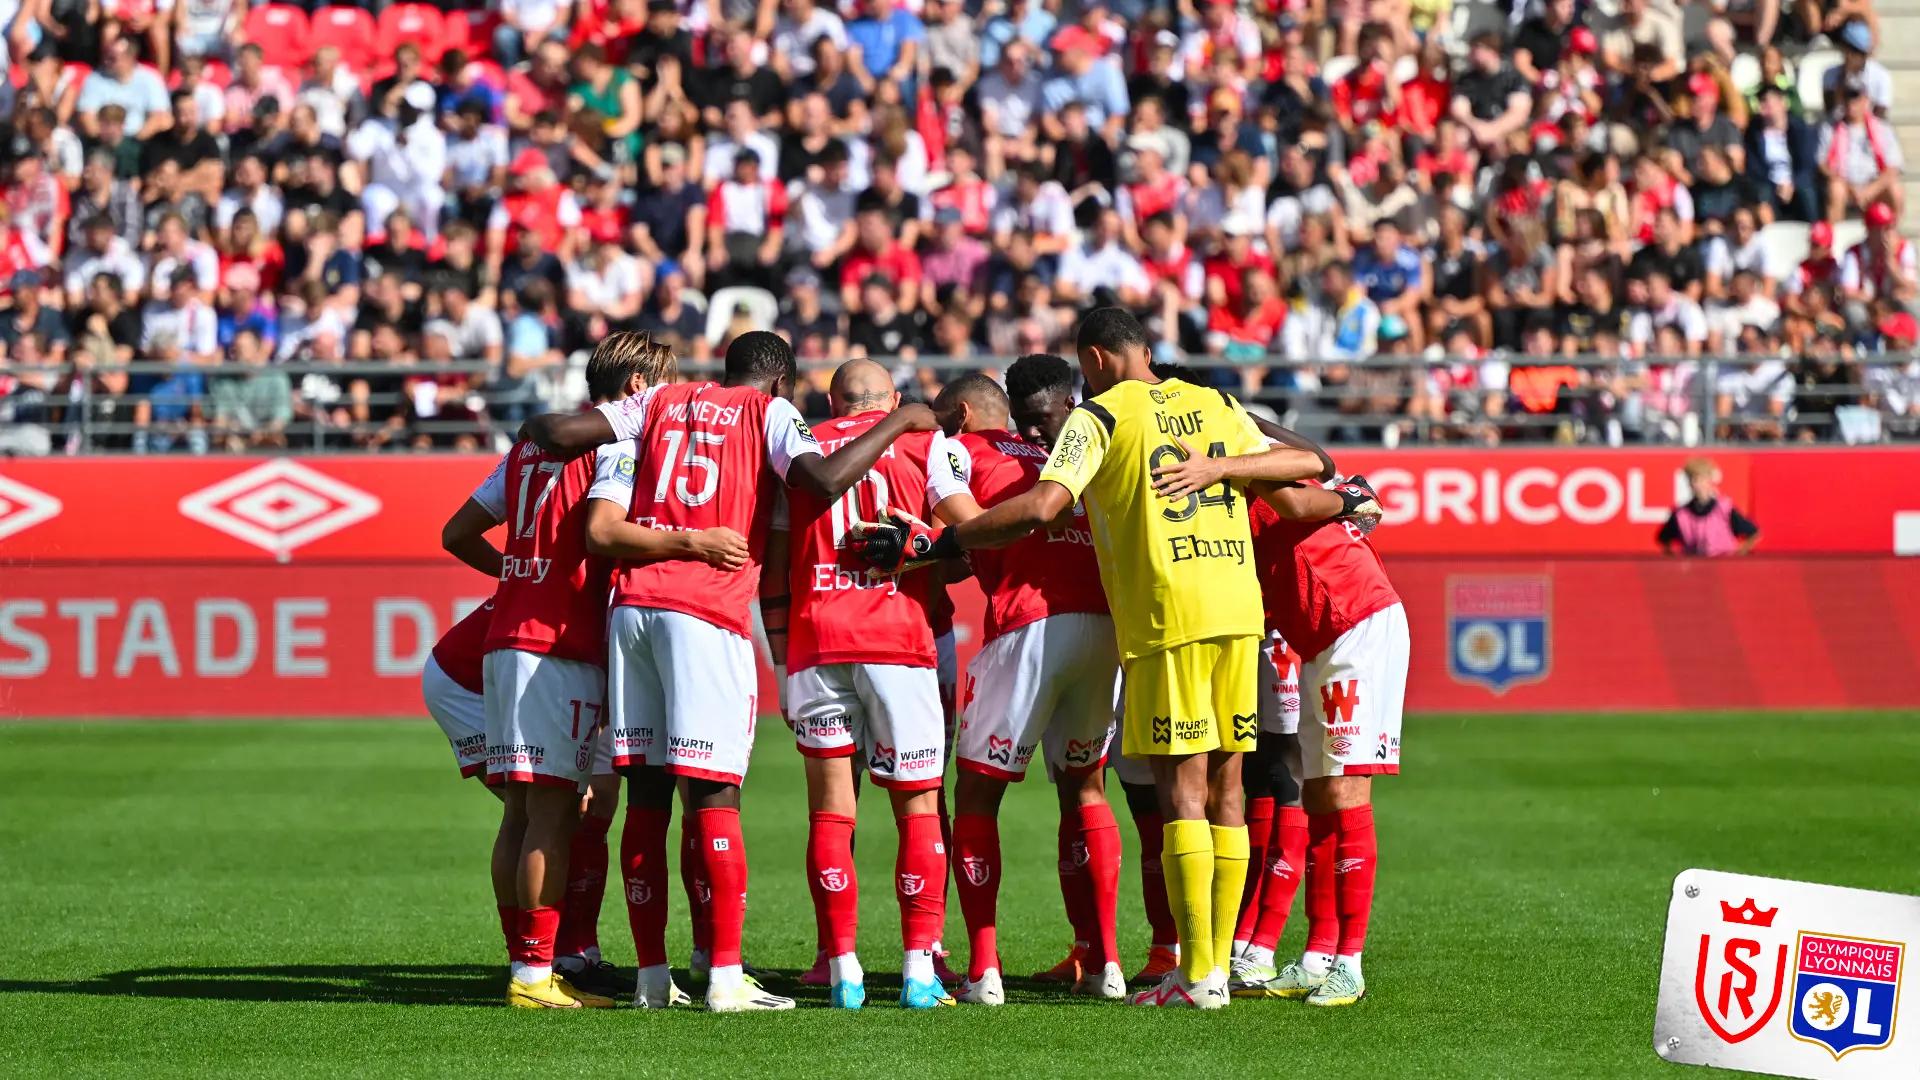 Avant de venir au Stadium, Reims s'incline face à Monaco mais reste dans le Top 5